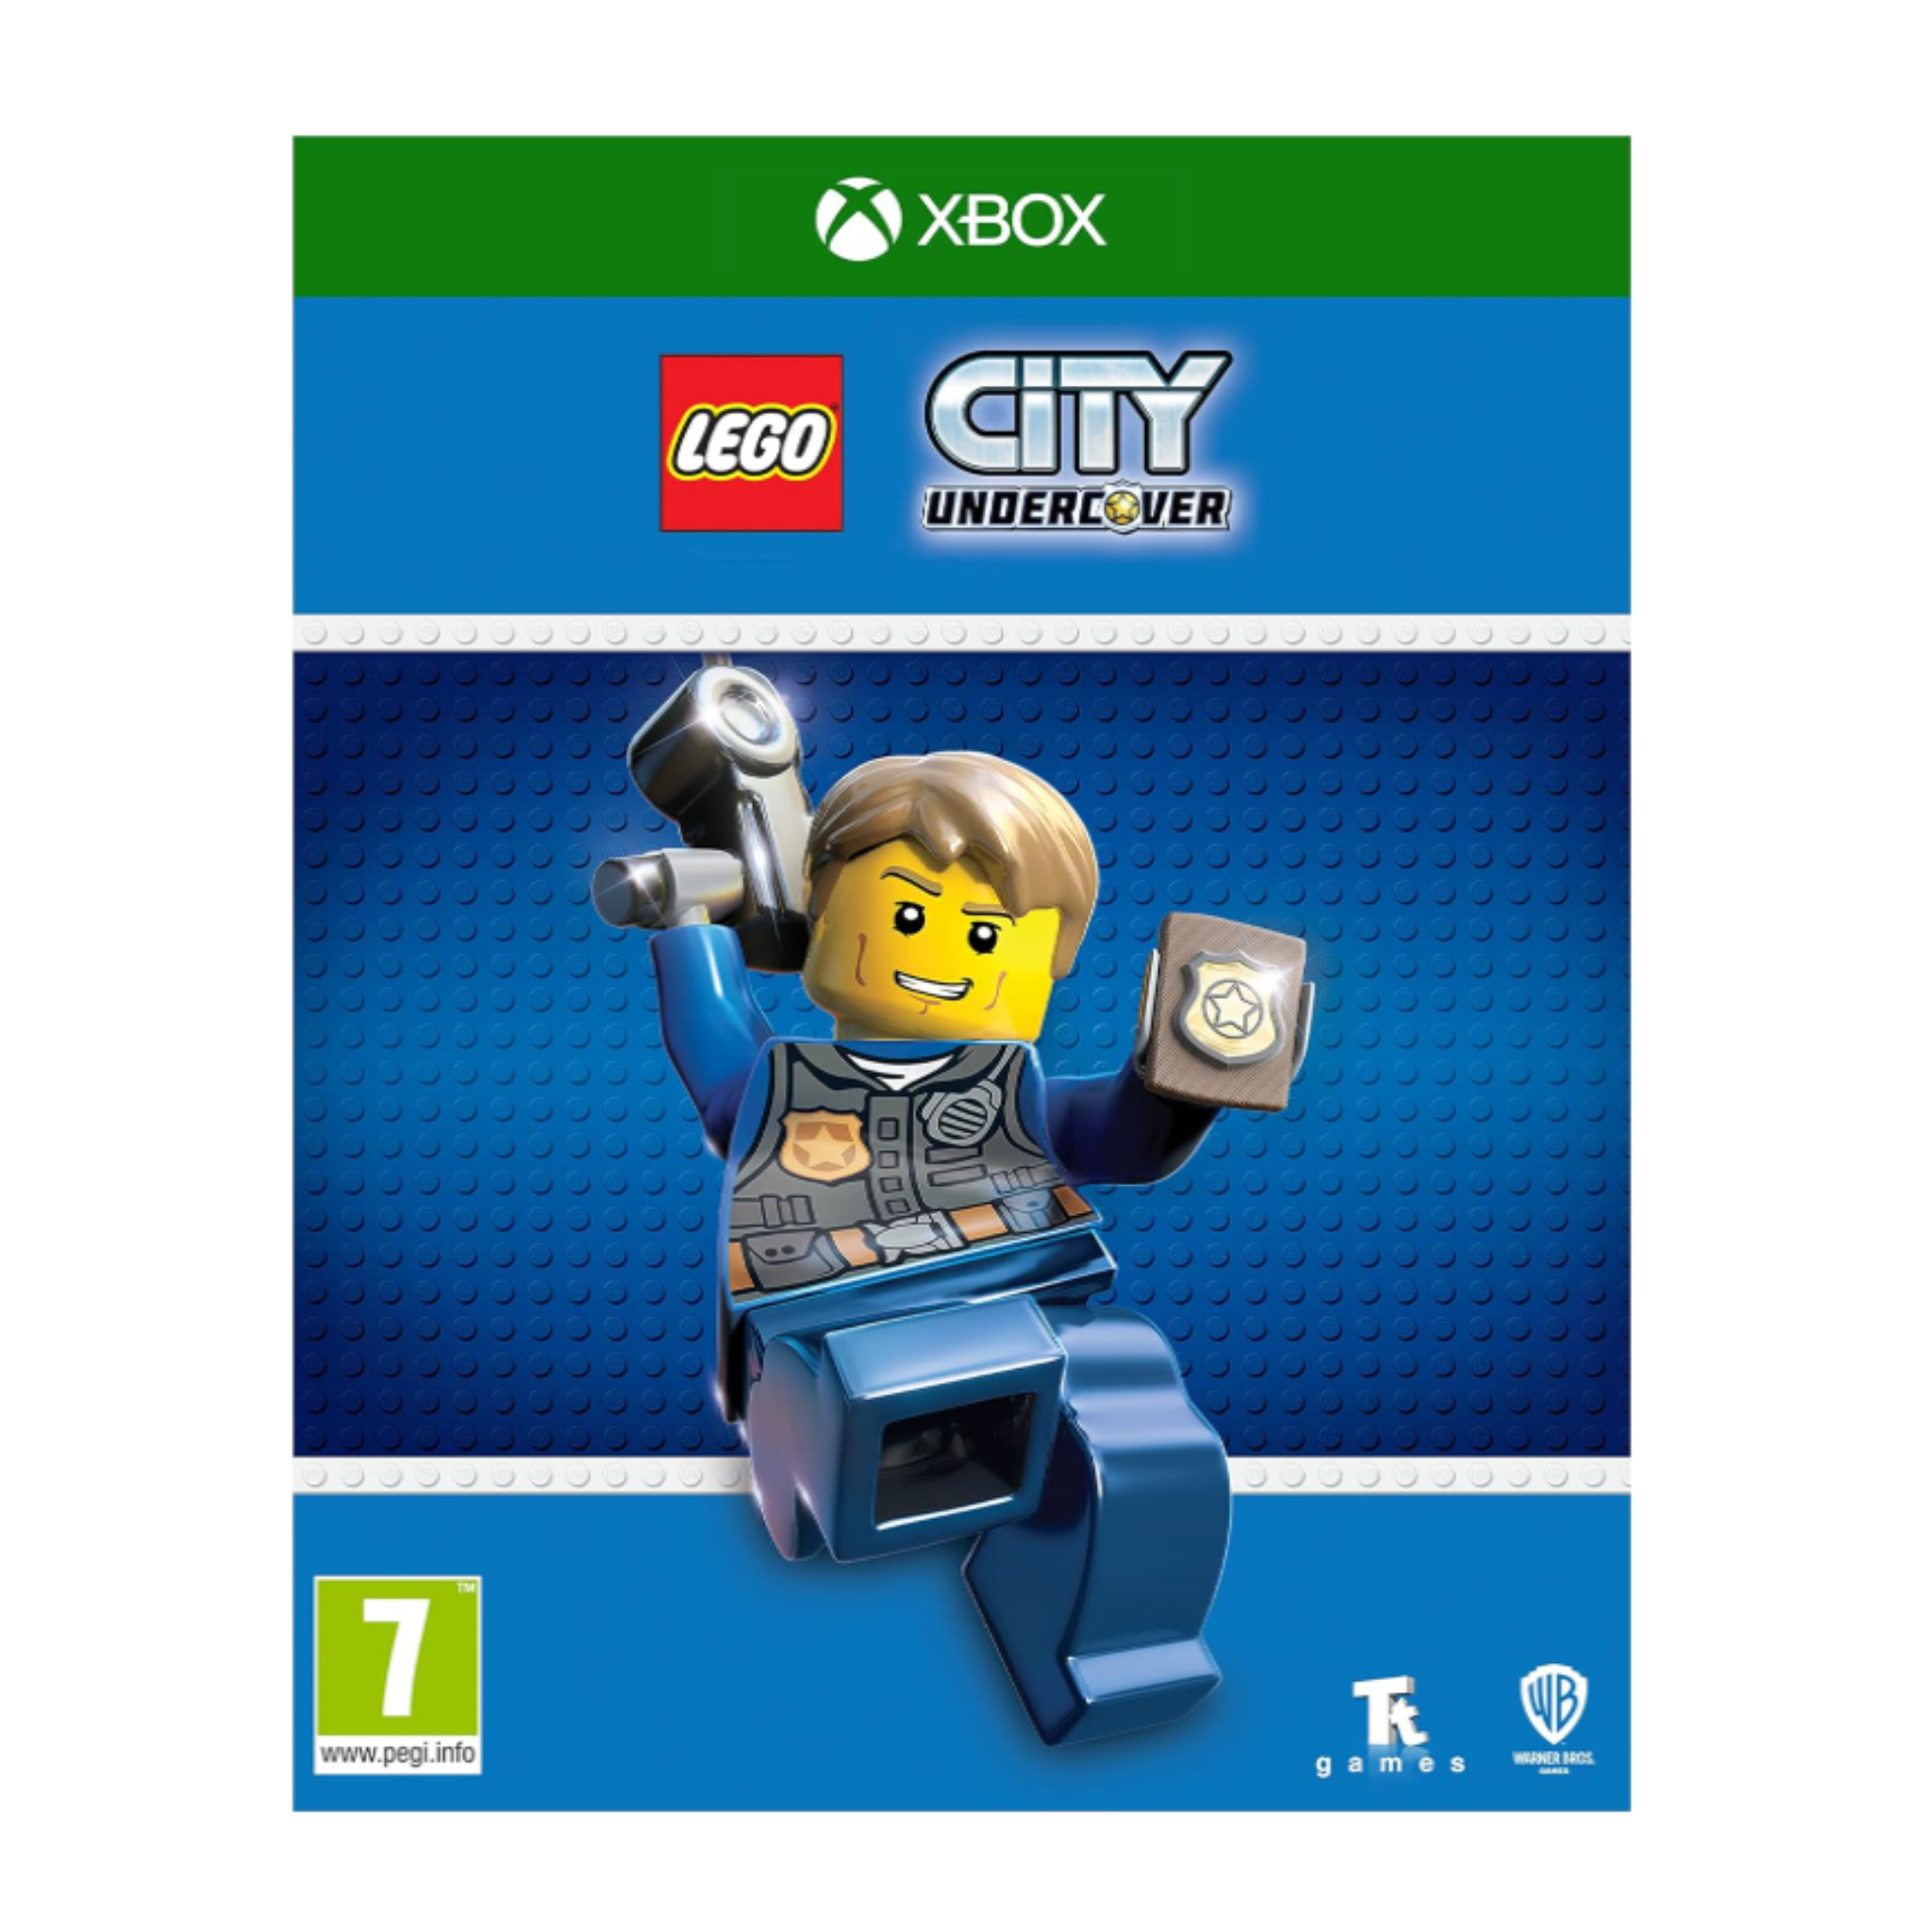 Photos - Game BROS WZRDTECH LEGO City Undercover Video  for XBox One 